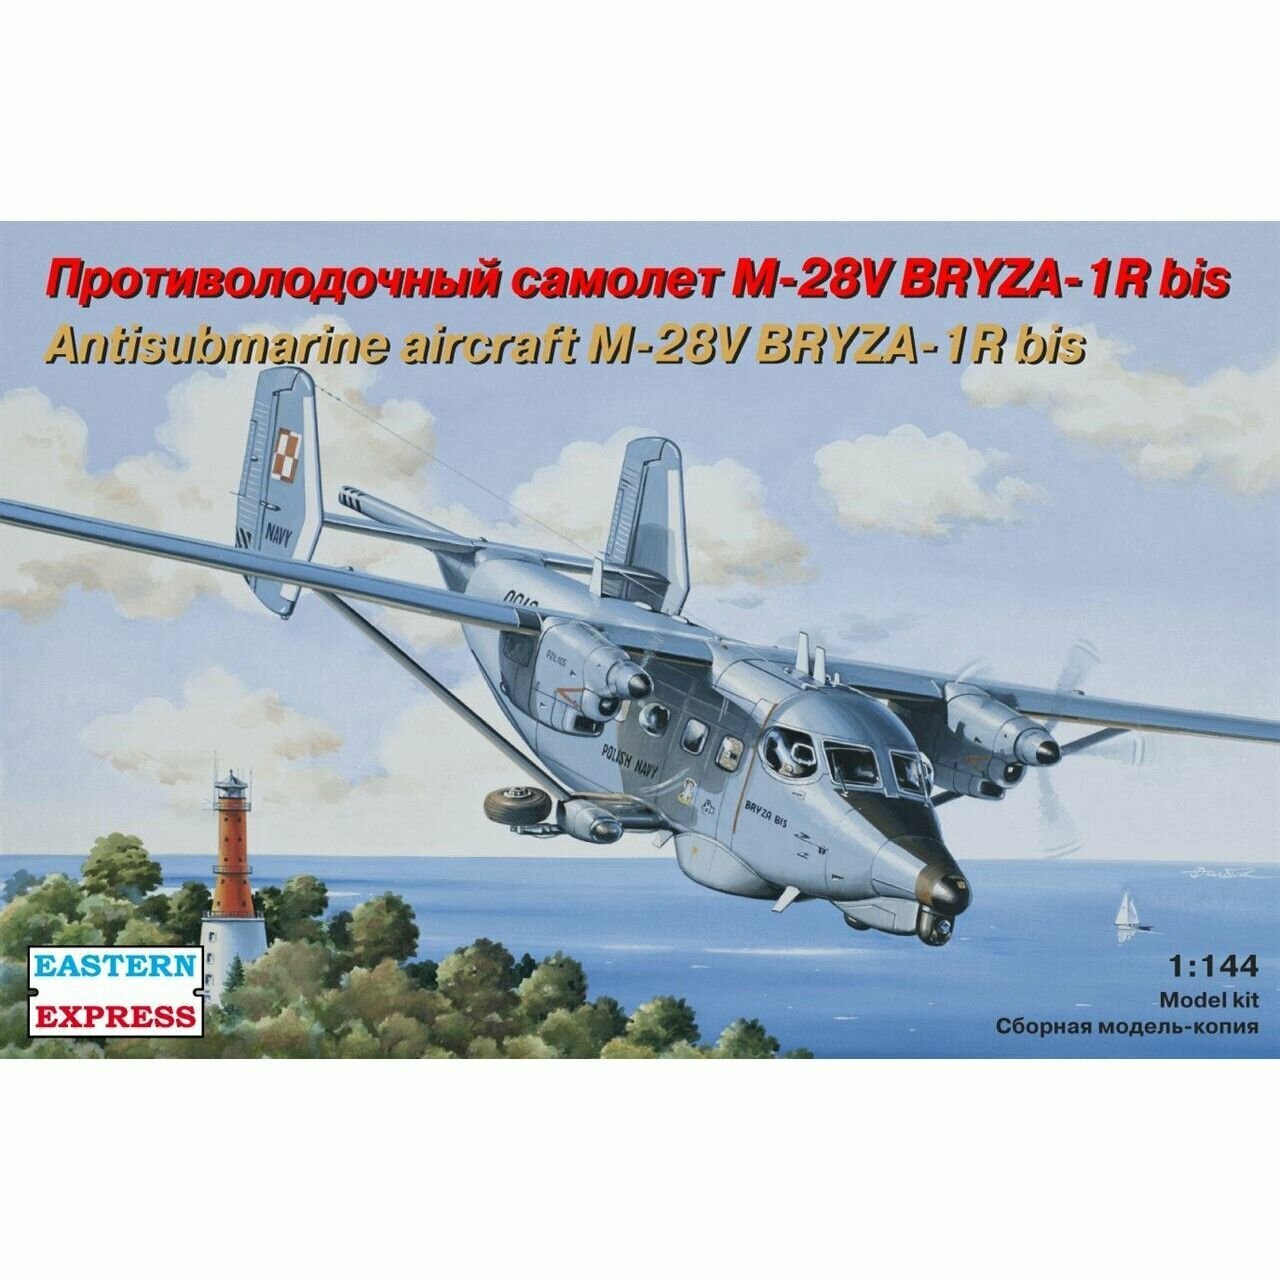 Сборная модель Противолодочный самолет М-28V Briza Bis, Восточный Экспресс, 1/144